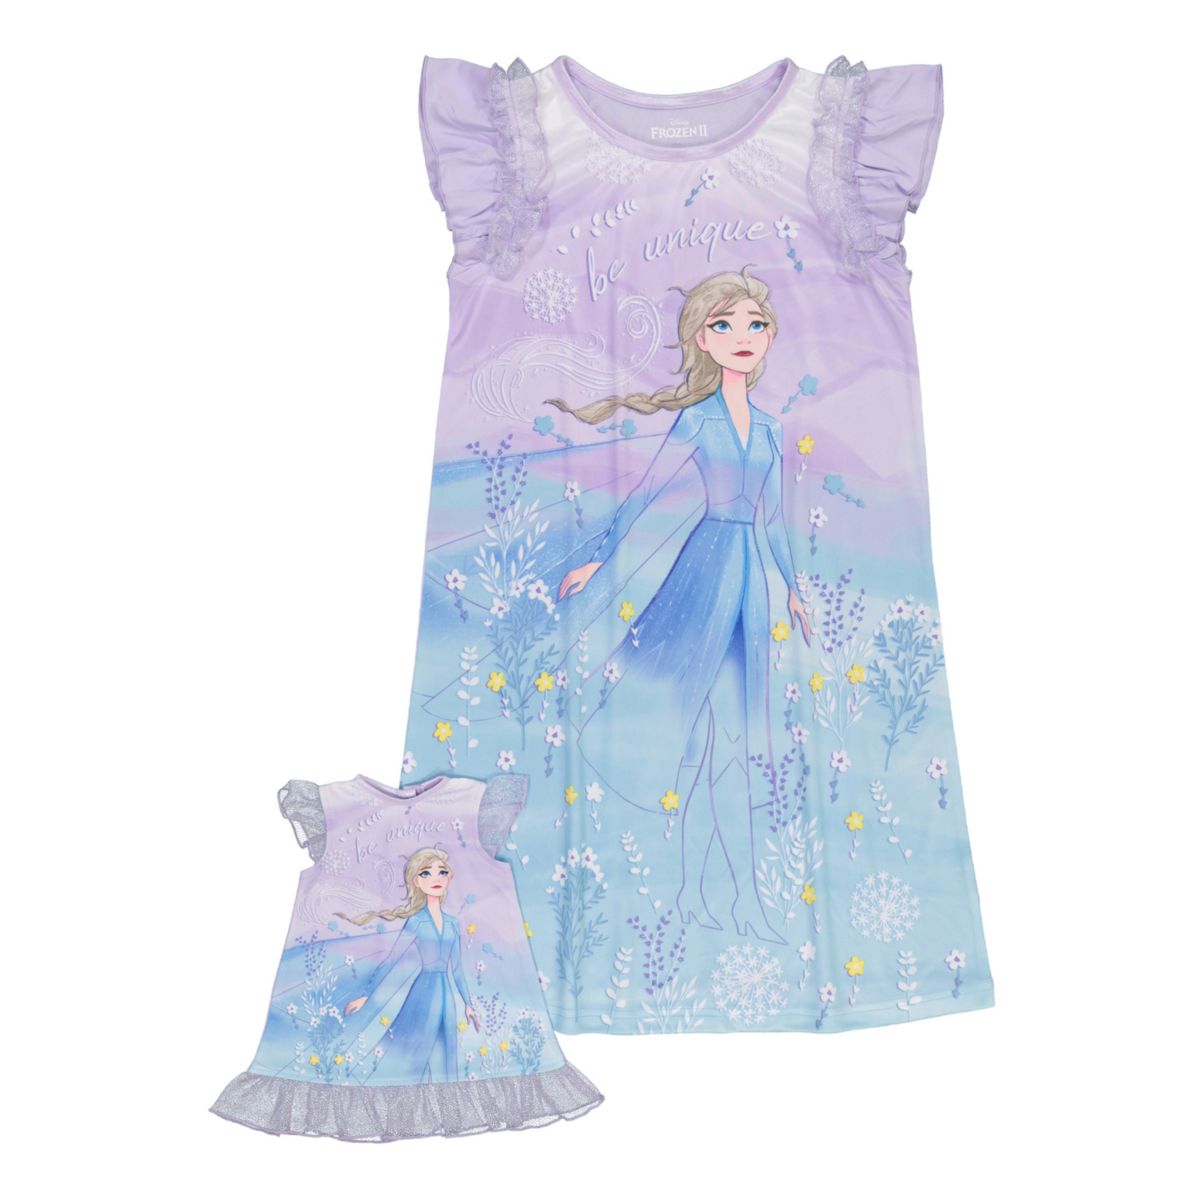 Disney's Frozen 2 Girls 4-8 Уникальная ночная рубашка Эльзы с подходящей ночной рубашкой для кукол Licensed Character